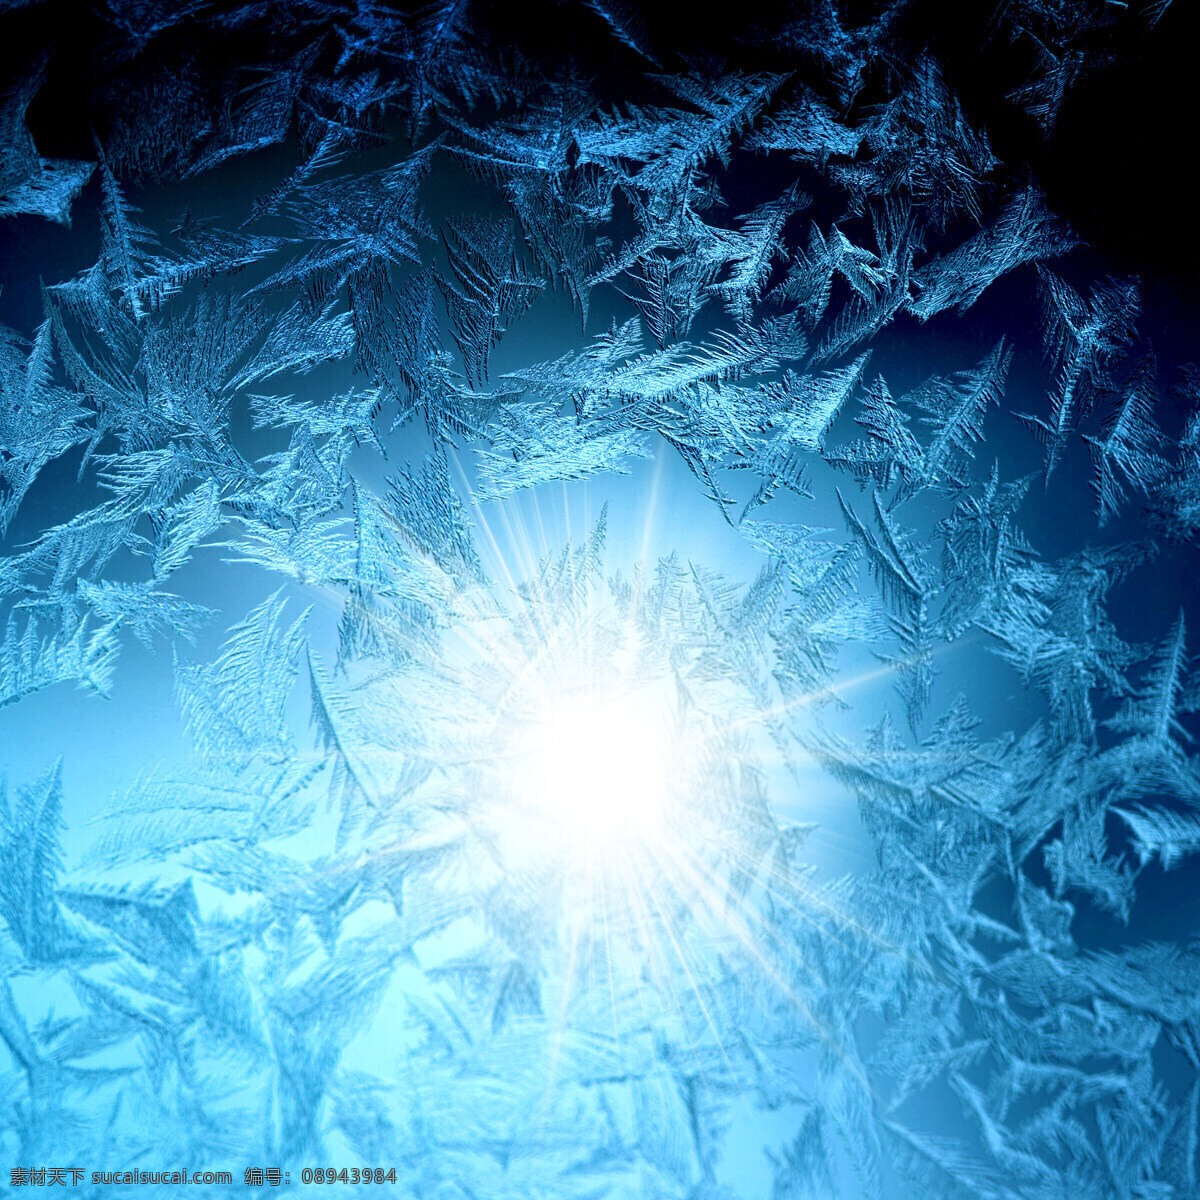 寒冷 冬天 冰凌 背景 图 阳光 素材背景 背景图片 广告背景 高清图片素材 设计素材 青色 天蓝色